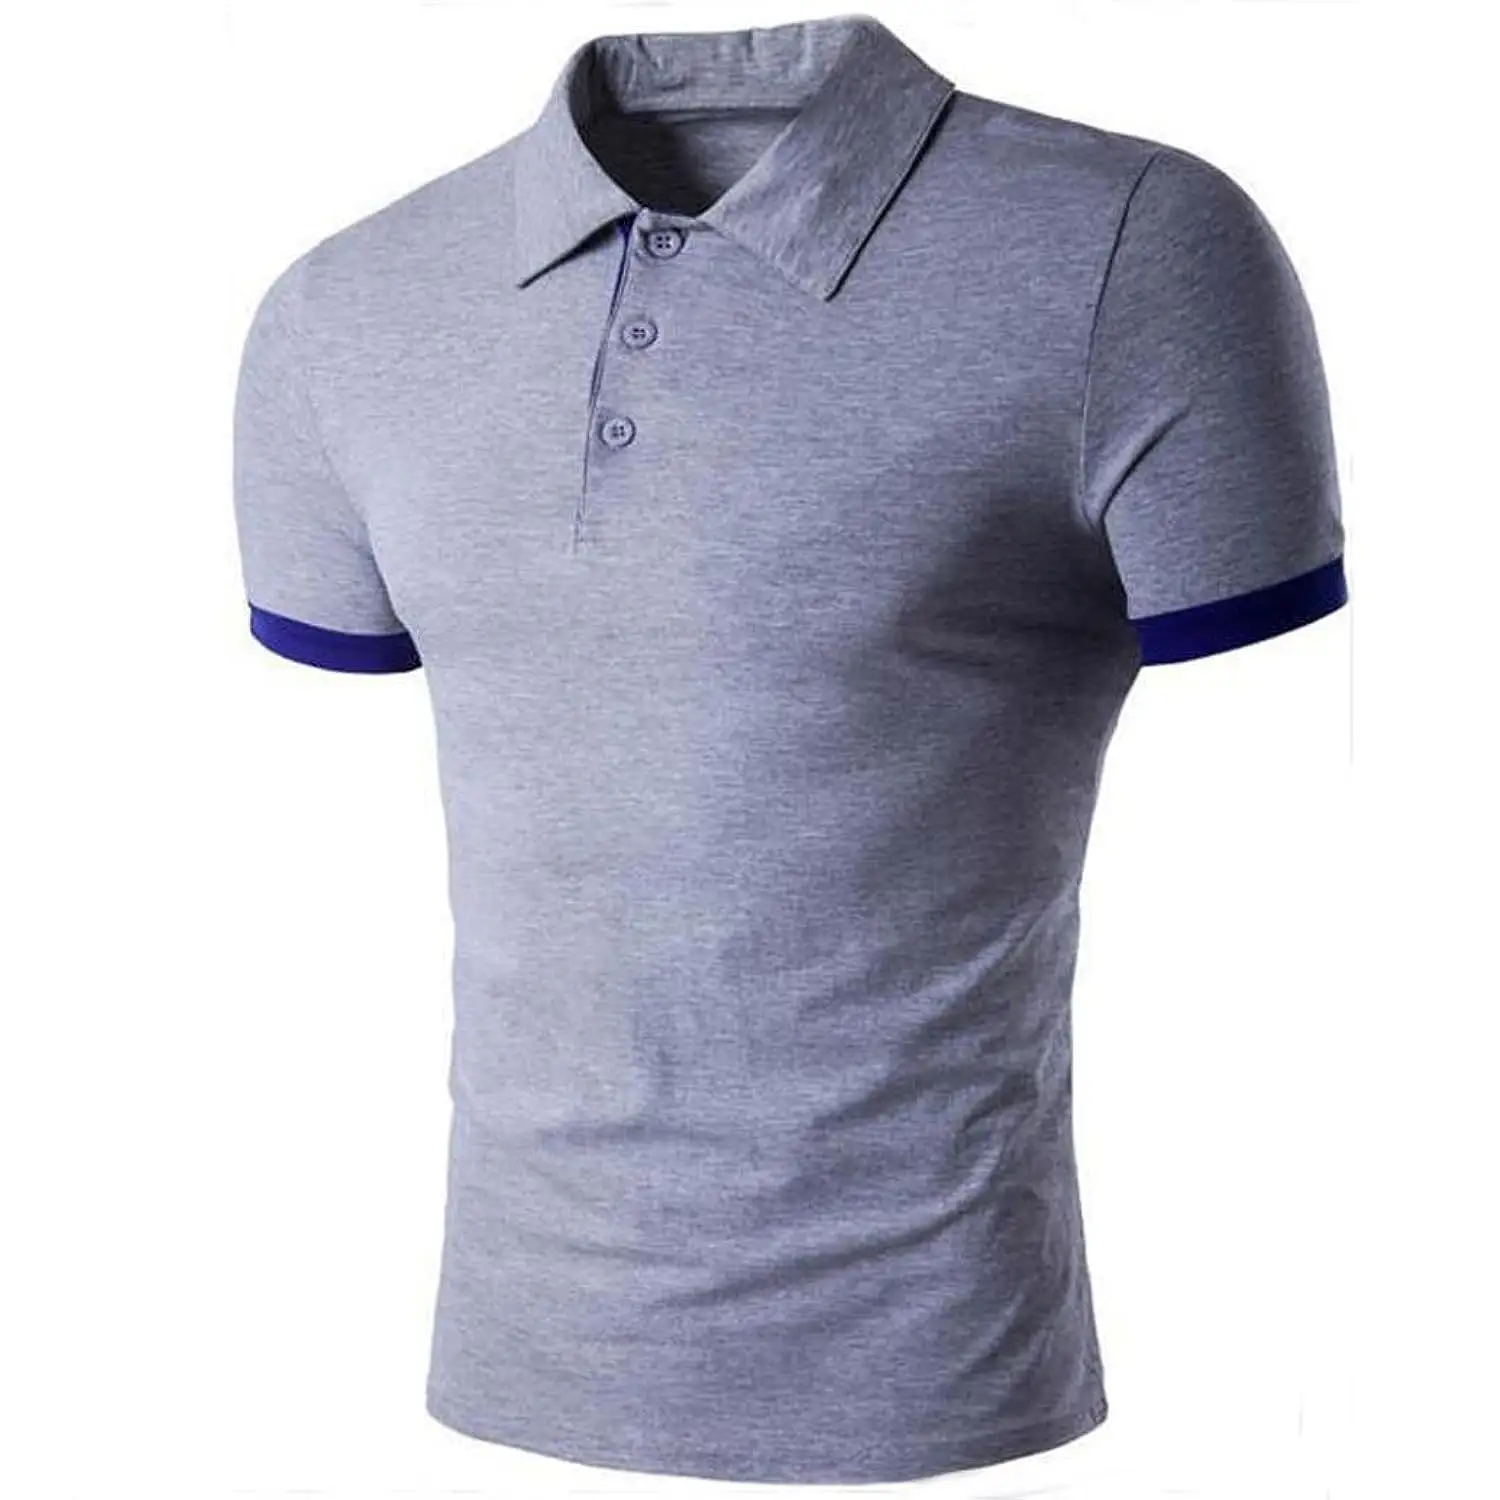 नि: शुल्क नमूने कस्टम पुरुषों की पोलो टी शर्ट 100% कपास टी शर्ट से अधिक आकार टी शर्ट विपरीत ट्रिम टी शर्ट सभी आकार